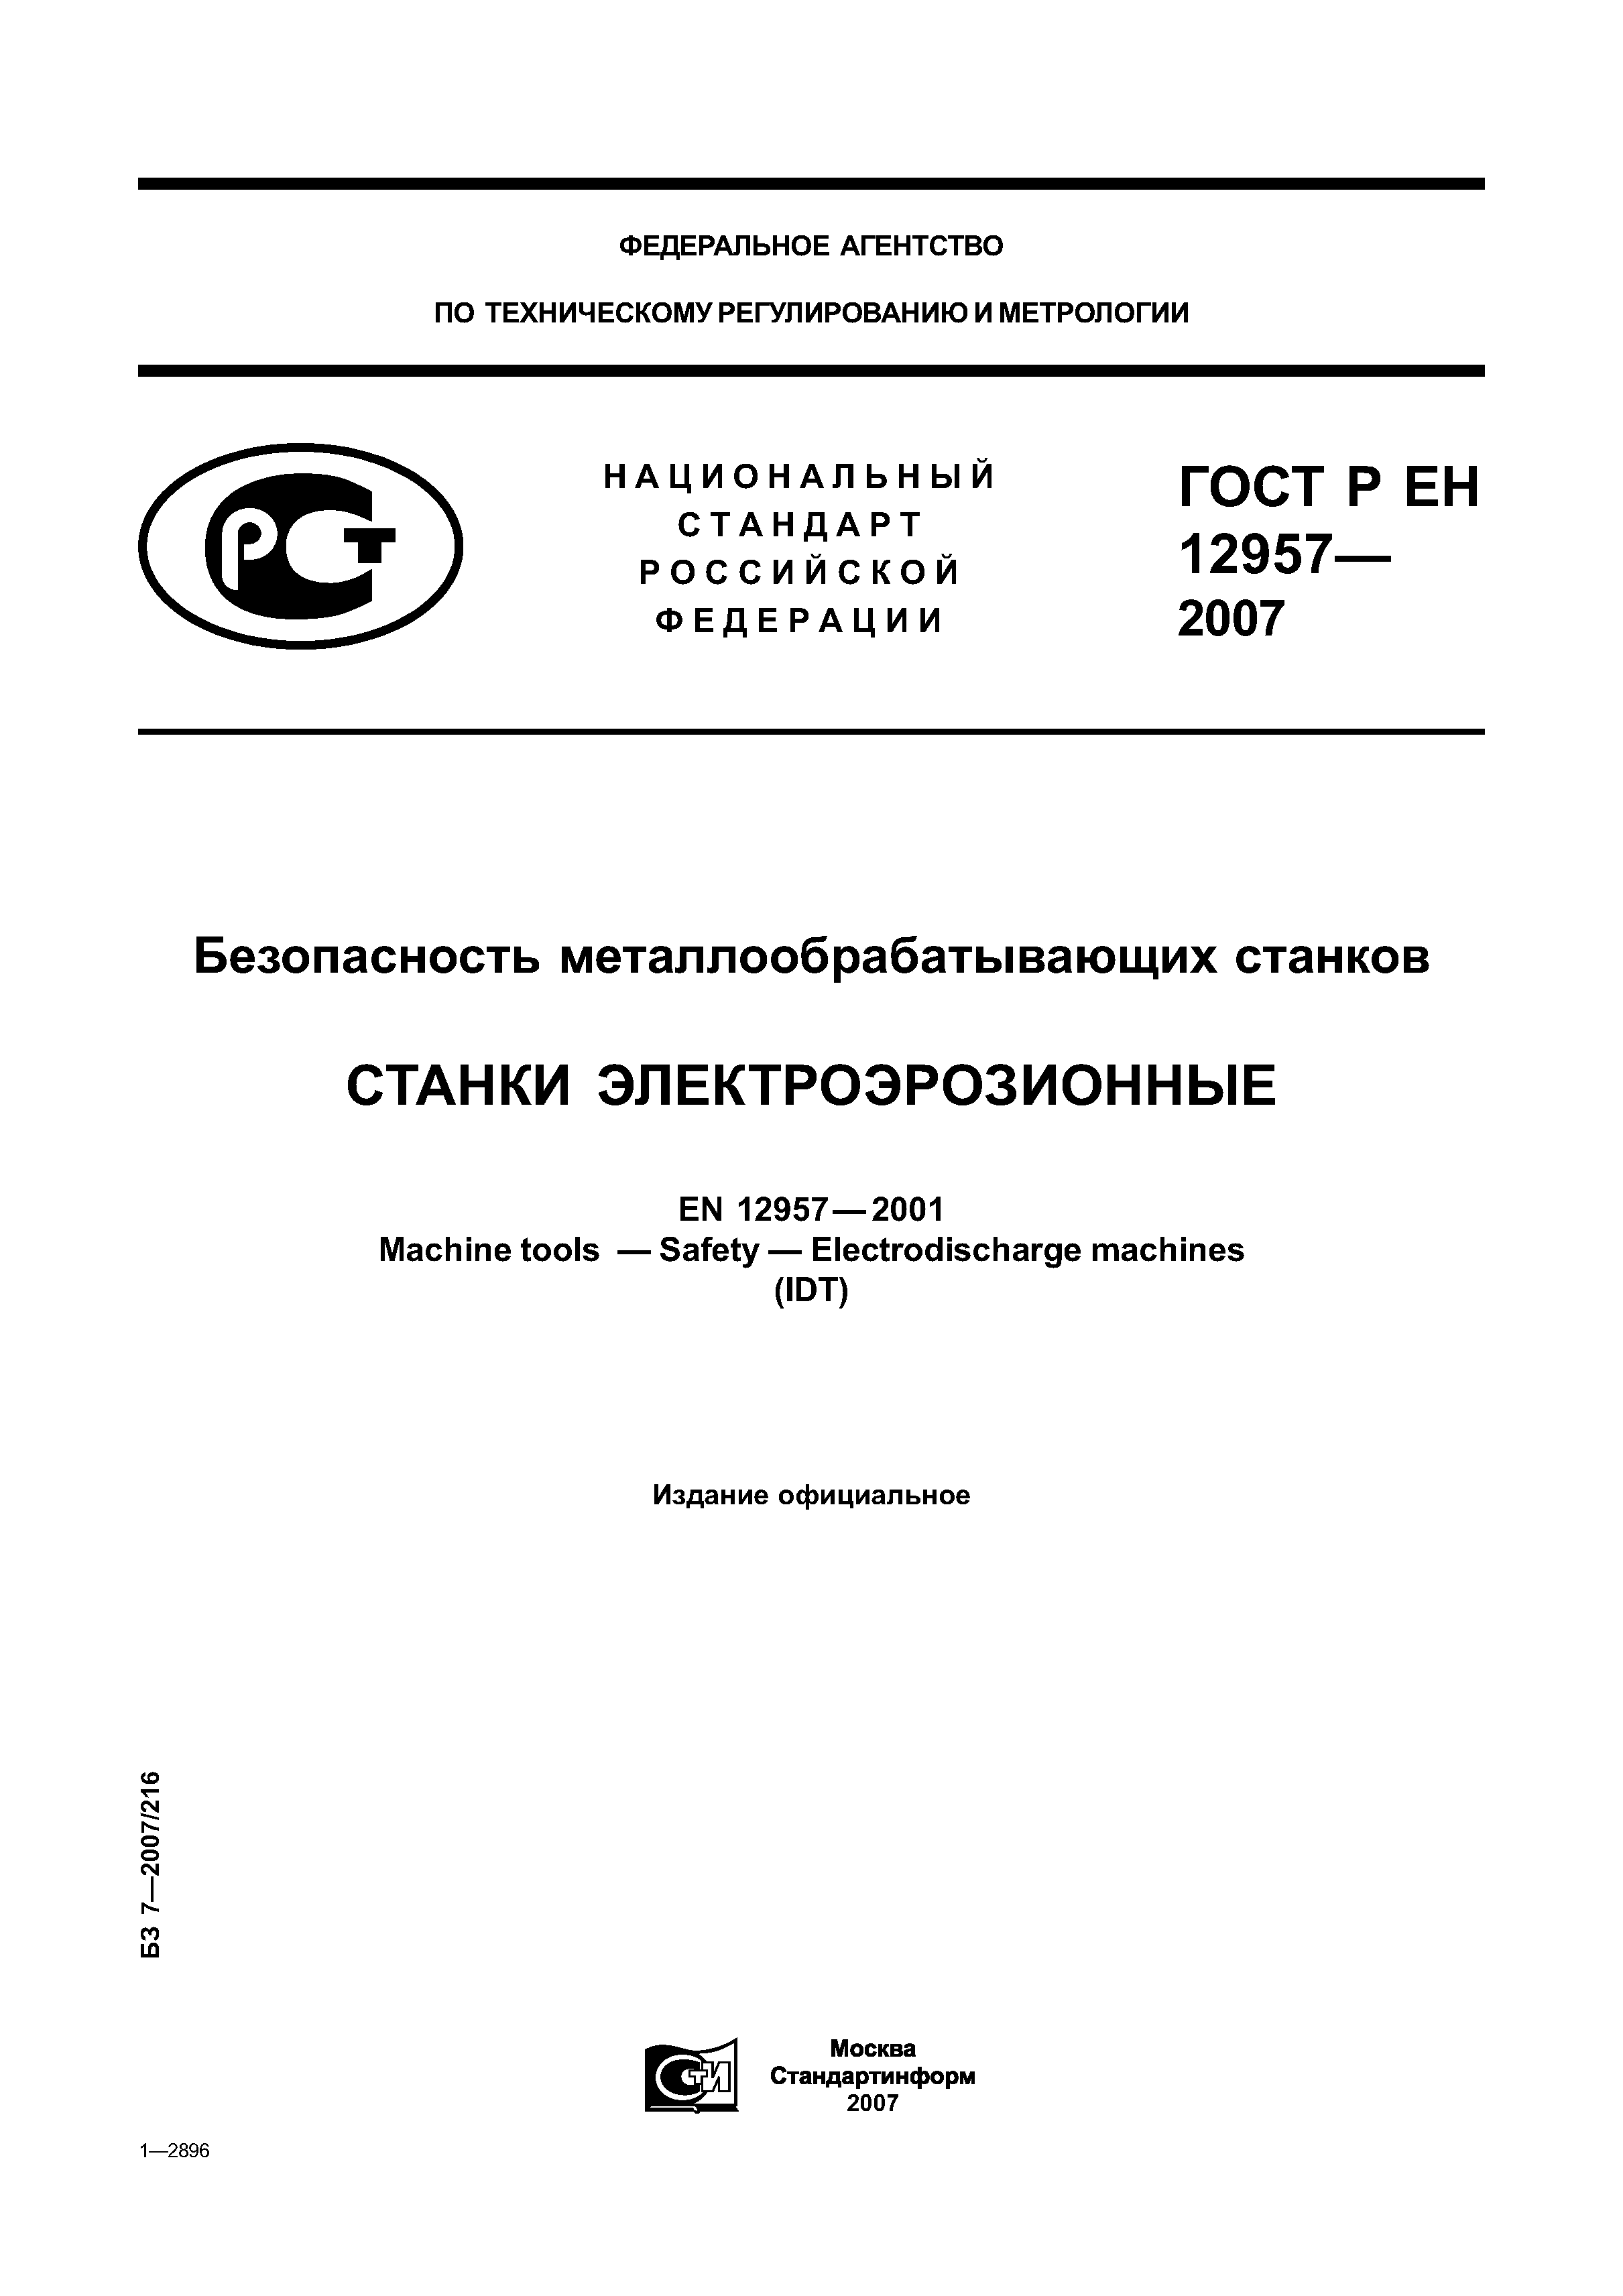 ГОСТ Р ЕН 12957-2007